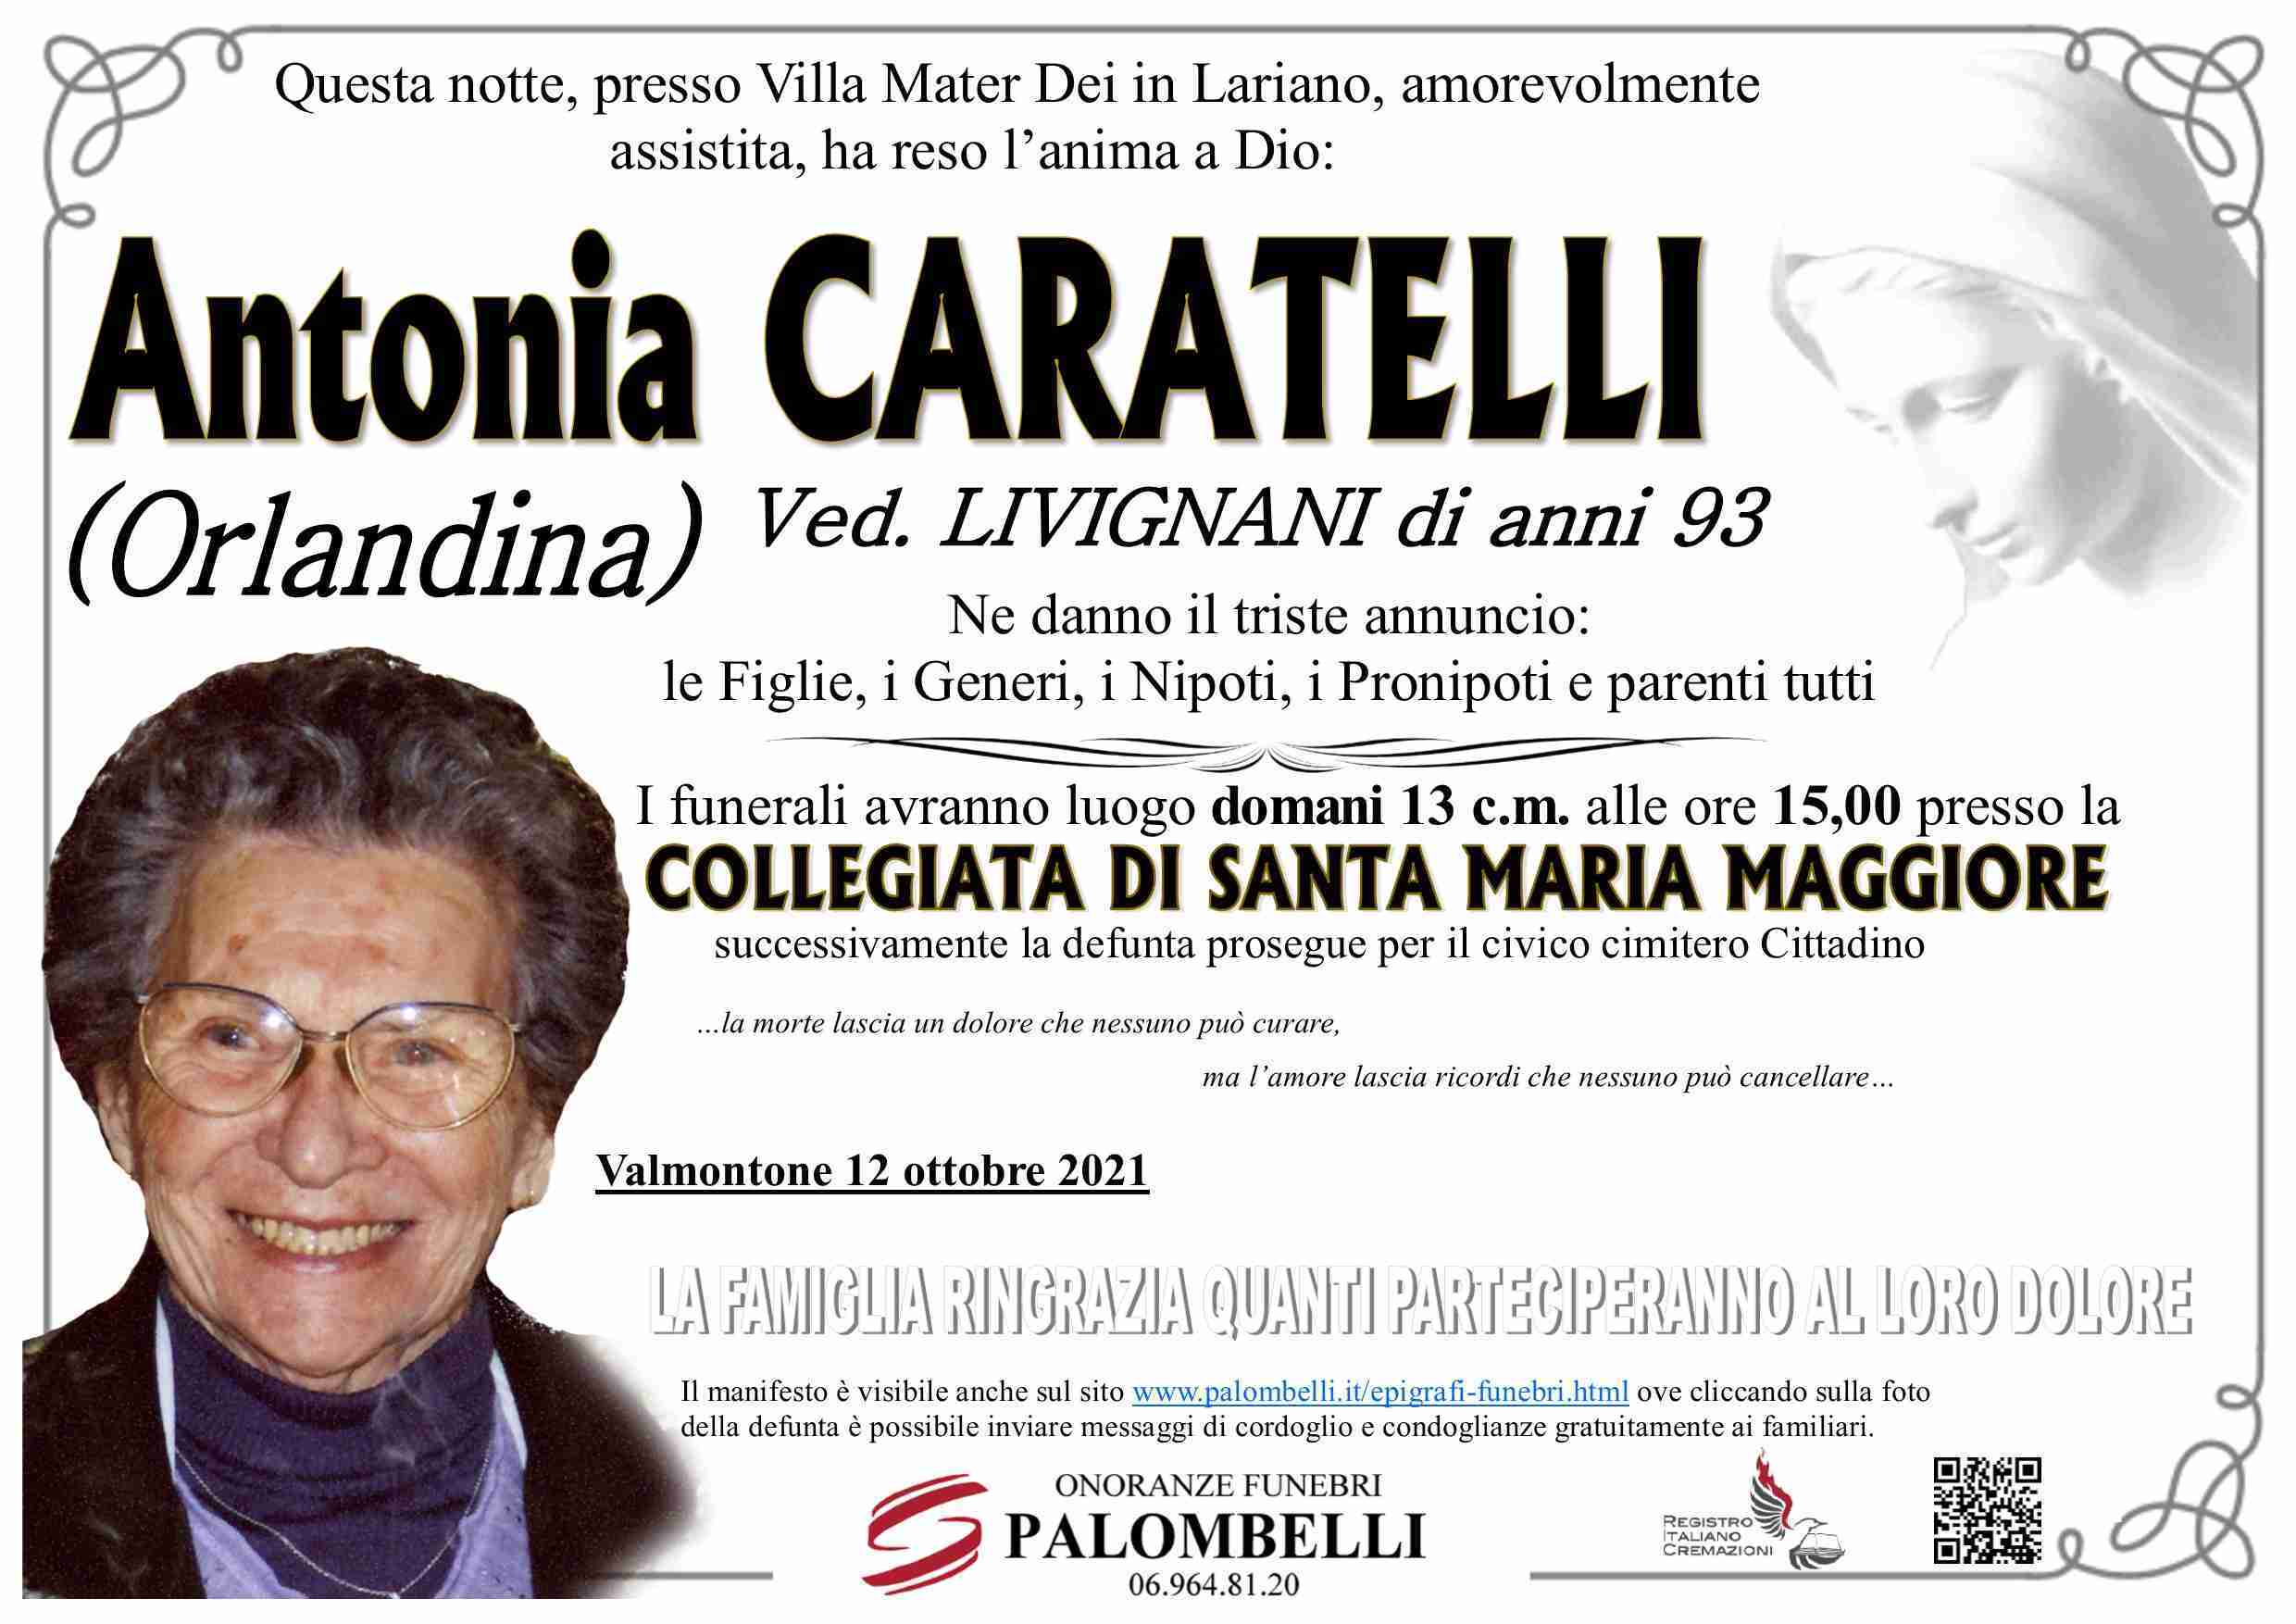 Antonia Caratelli